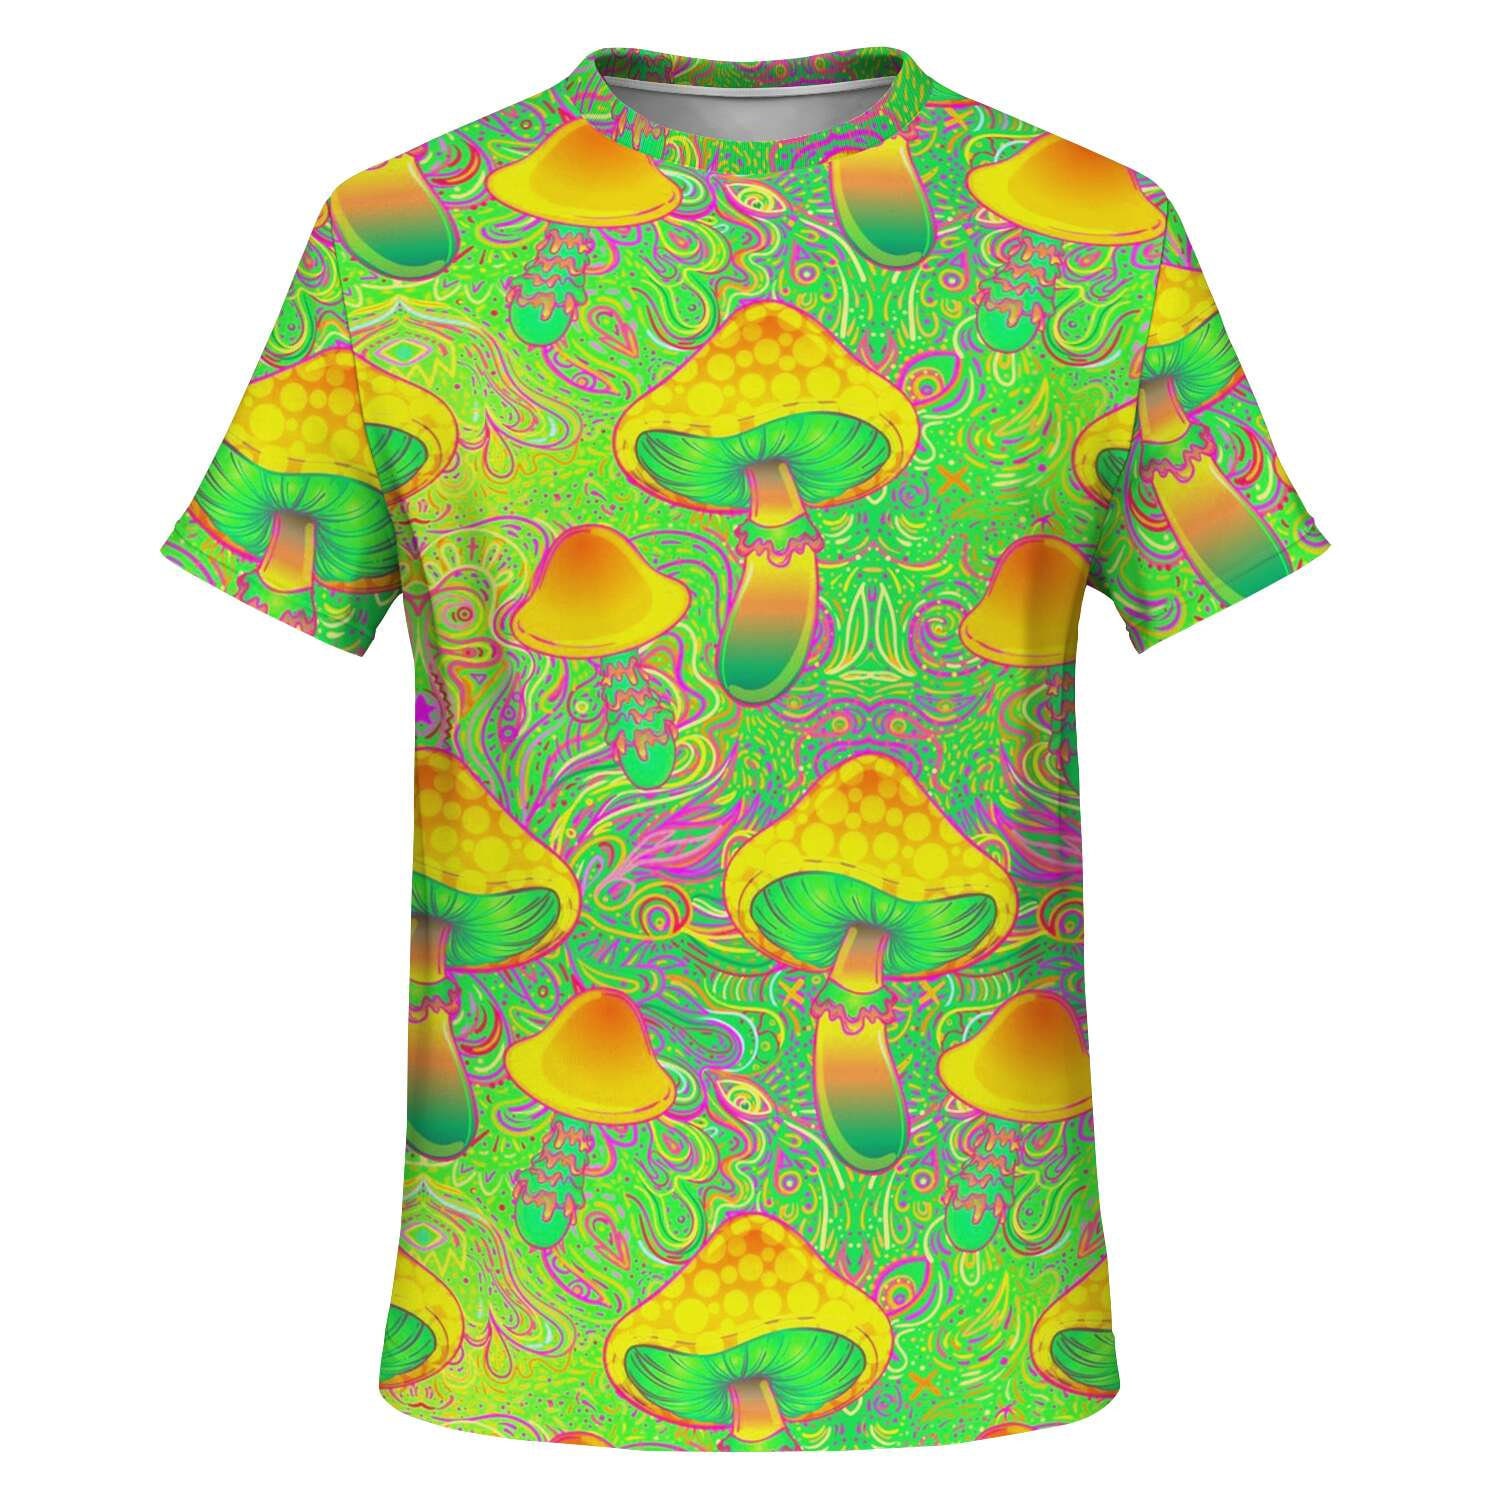 Trippy Psychedelic T-Shirt Festival Fashion Trance LSD | Etsy